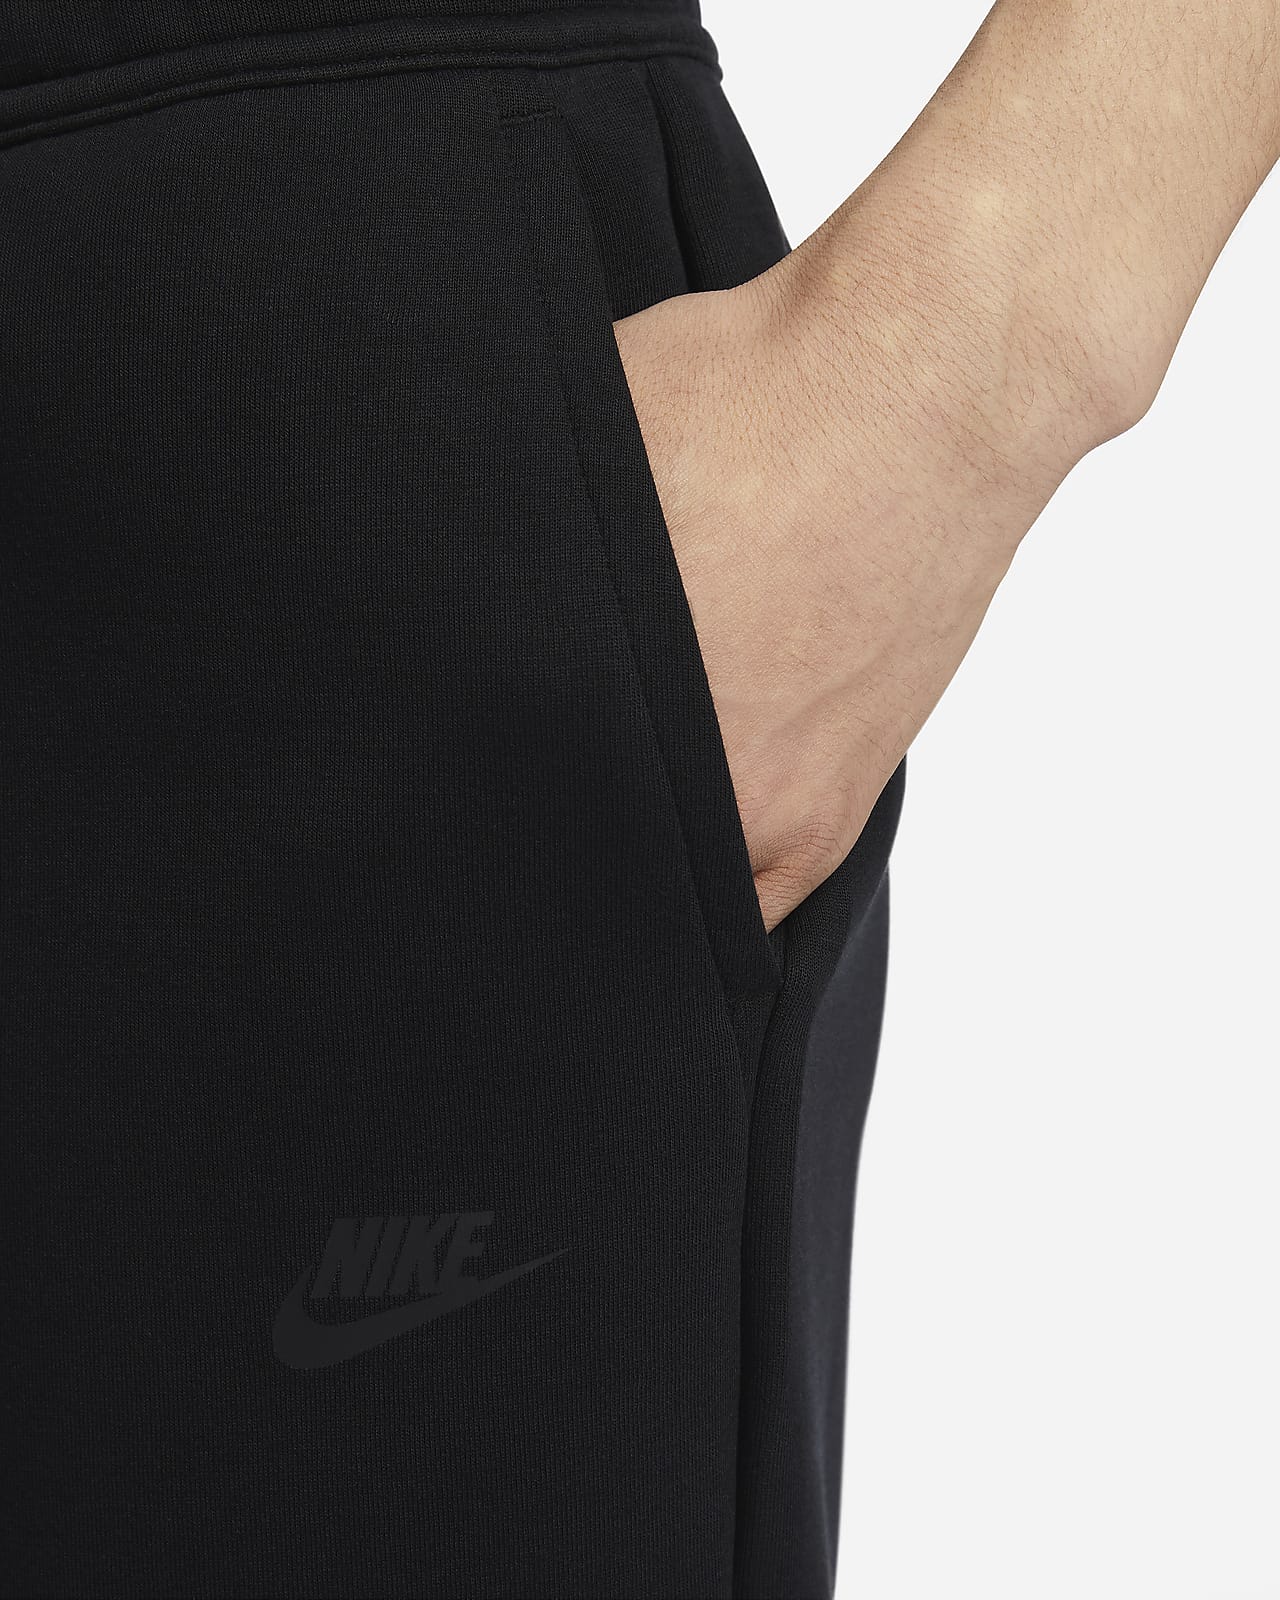 Nike Sportswear Tech Fleece Shorts Black